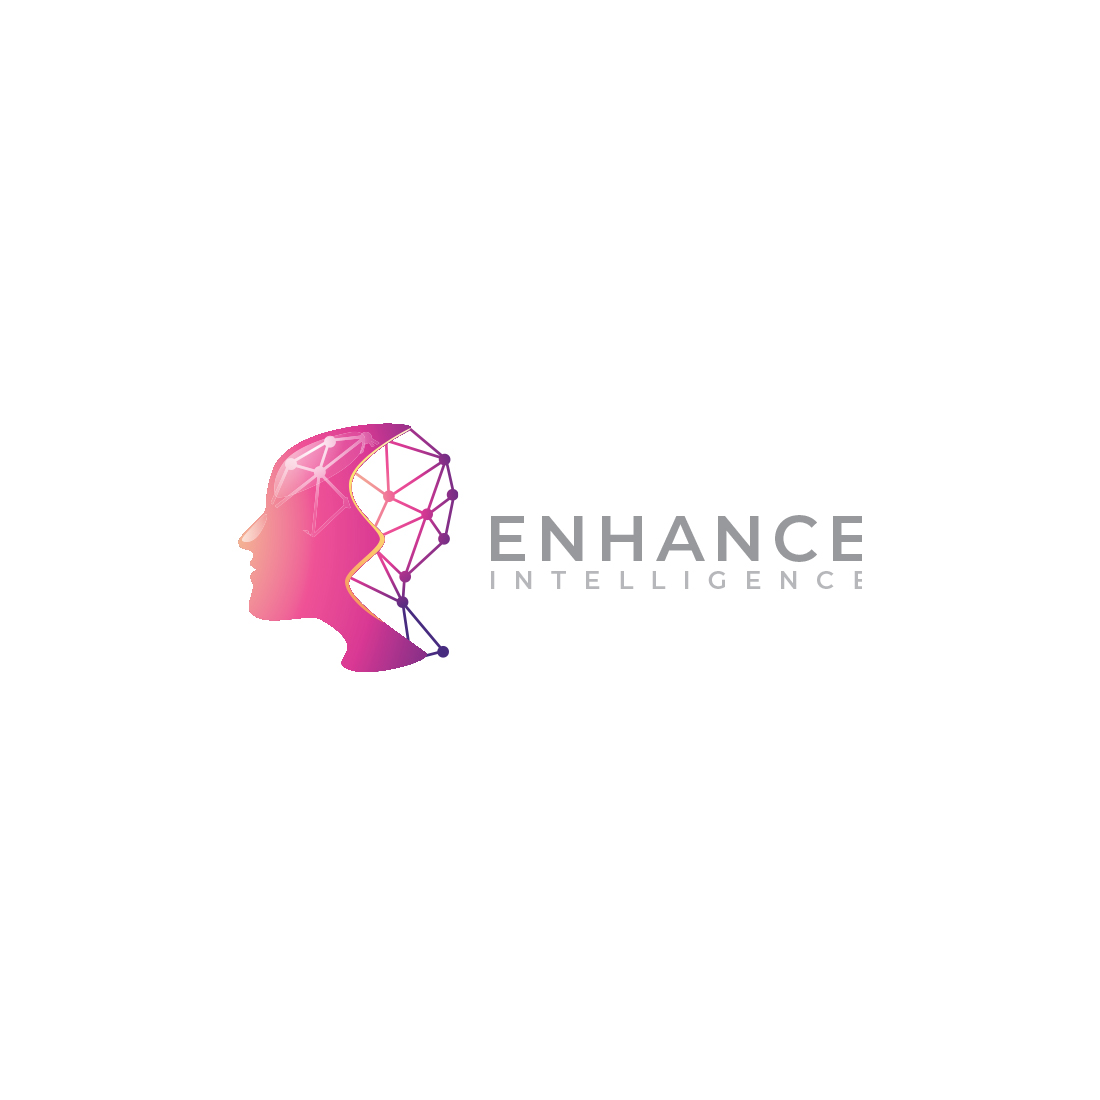 Intelegence Brain Logo Design cover image.